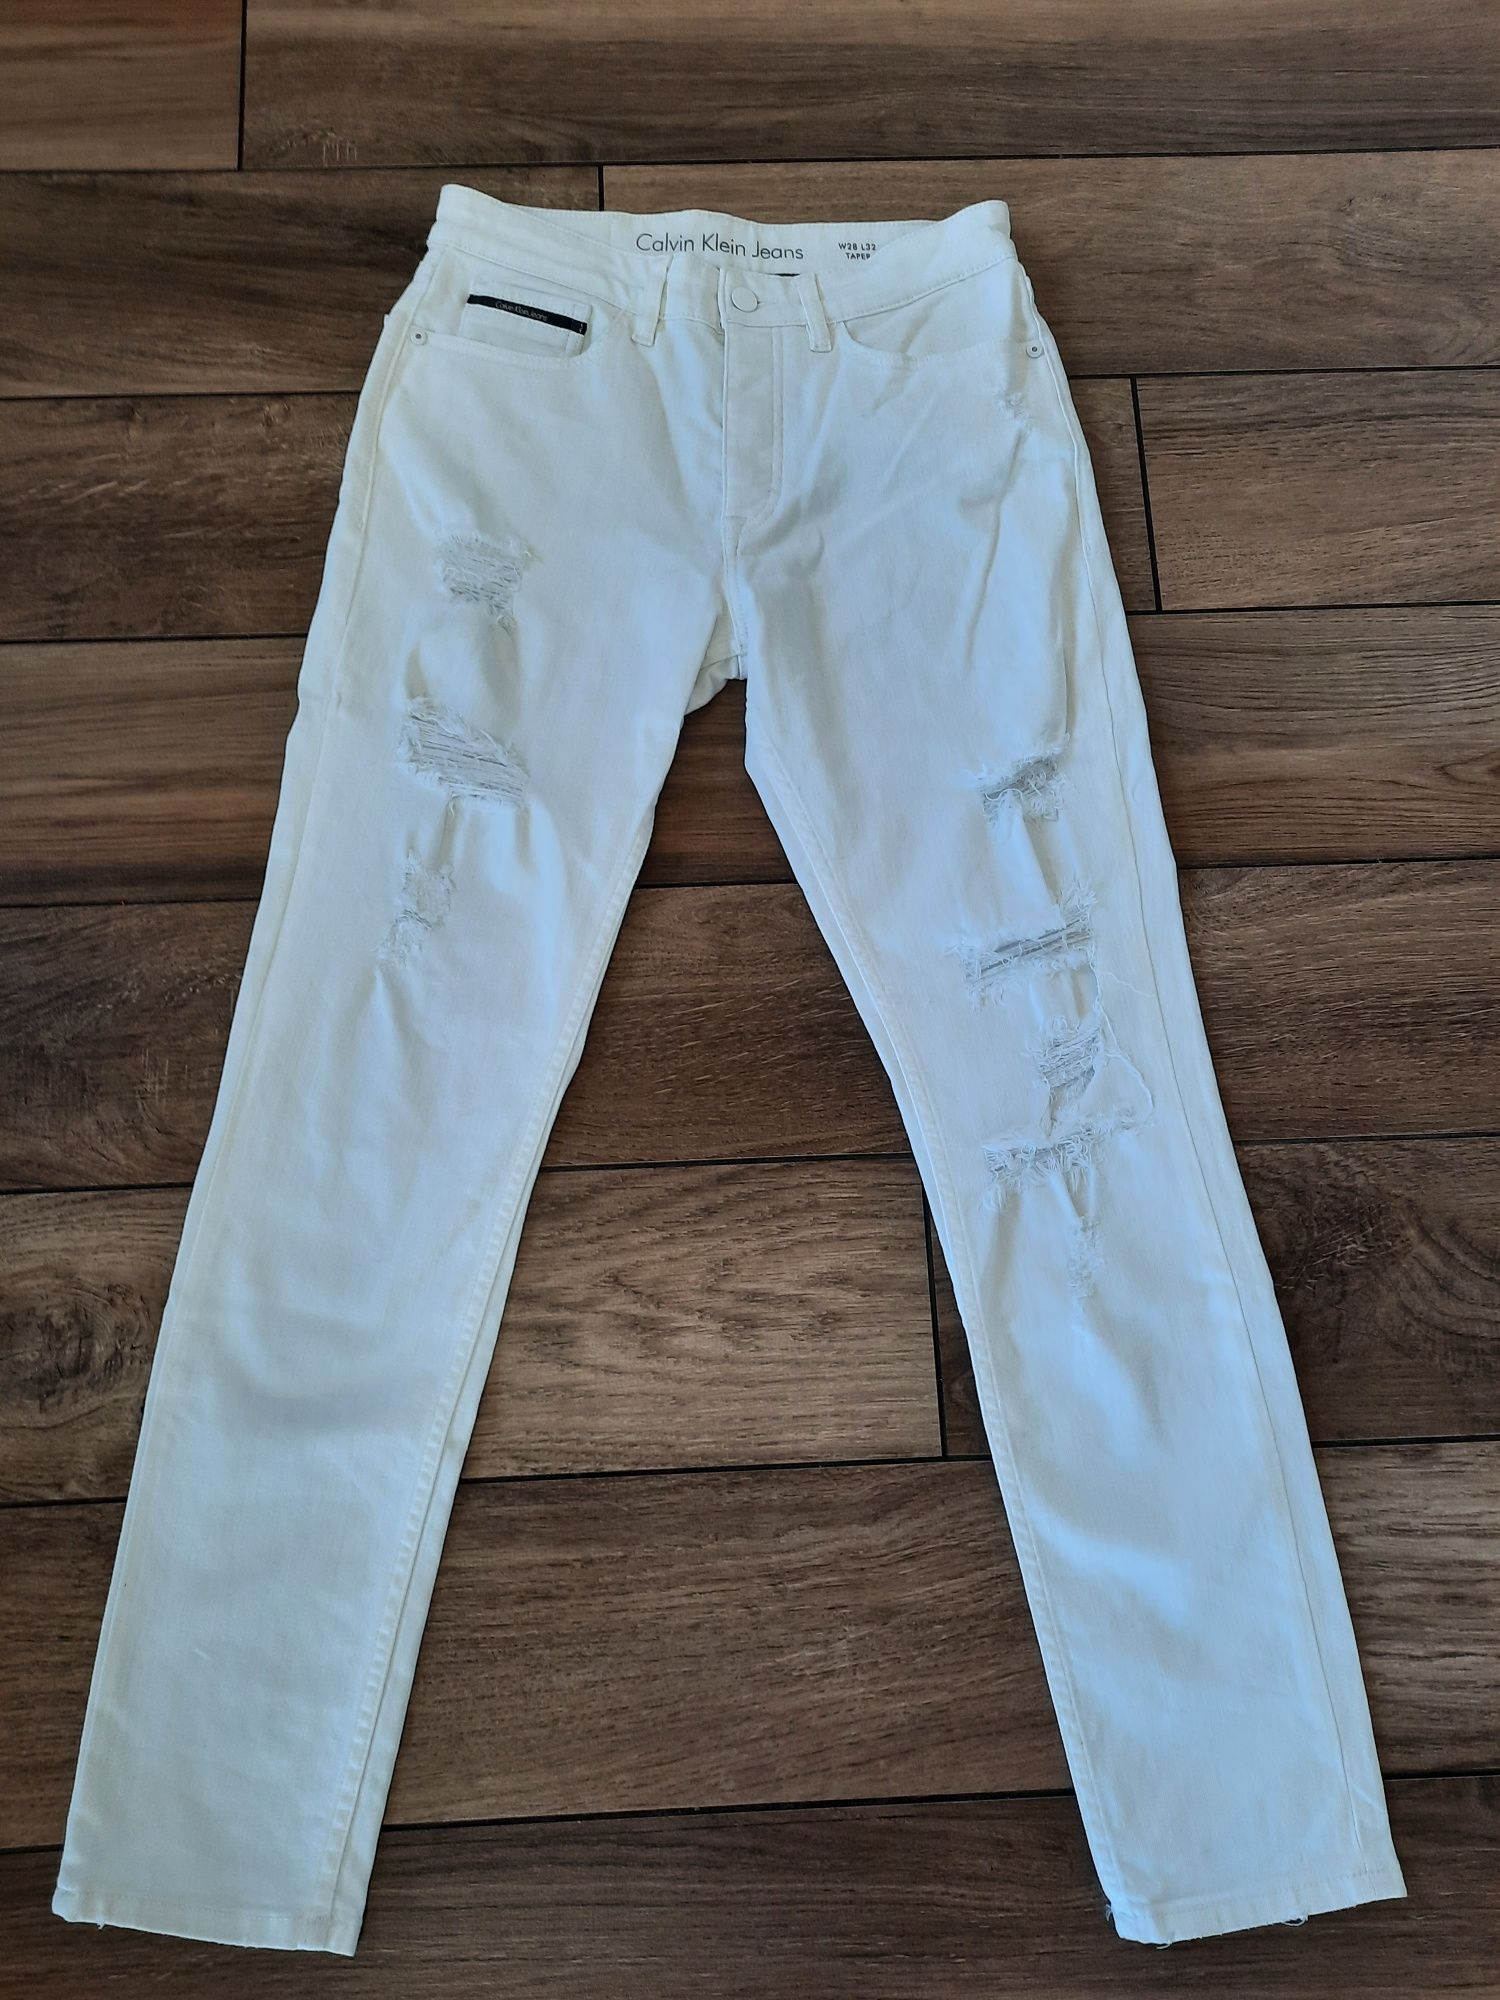 Calvin Klein Jeans damskie 100% oryginalne! roz.S/M białe